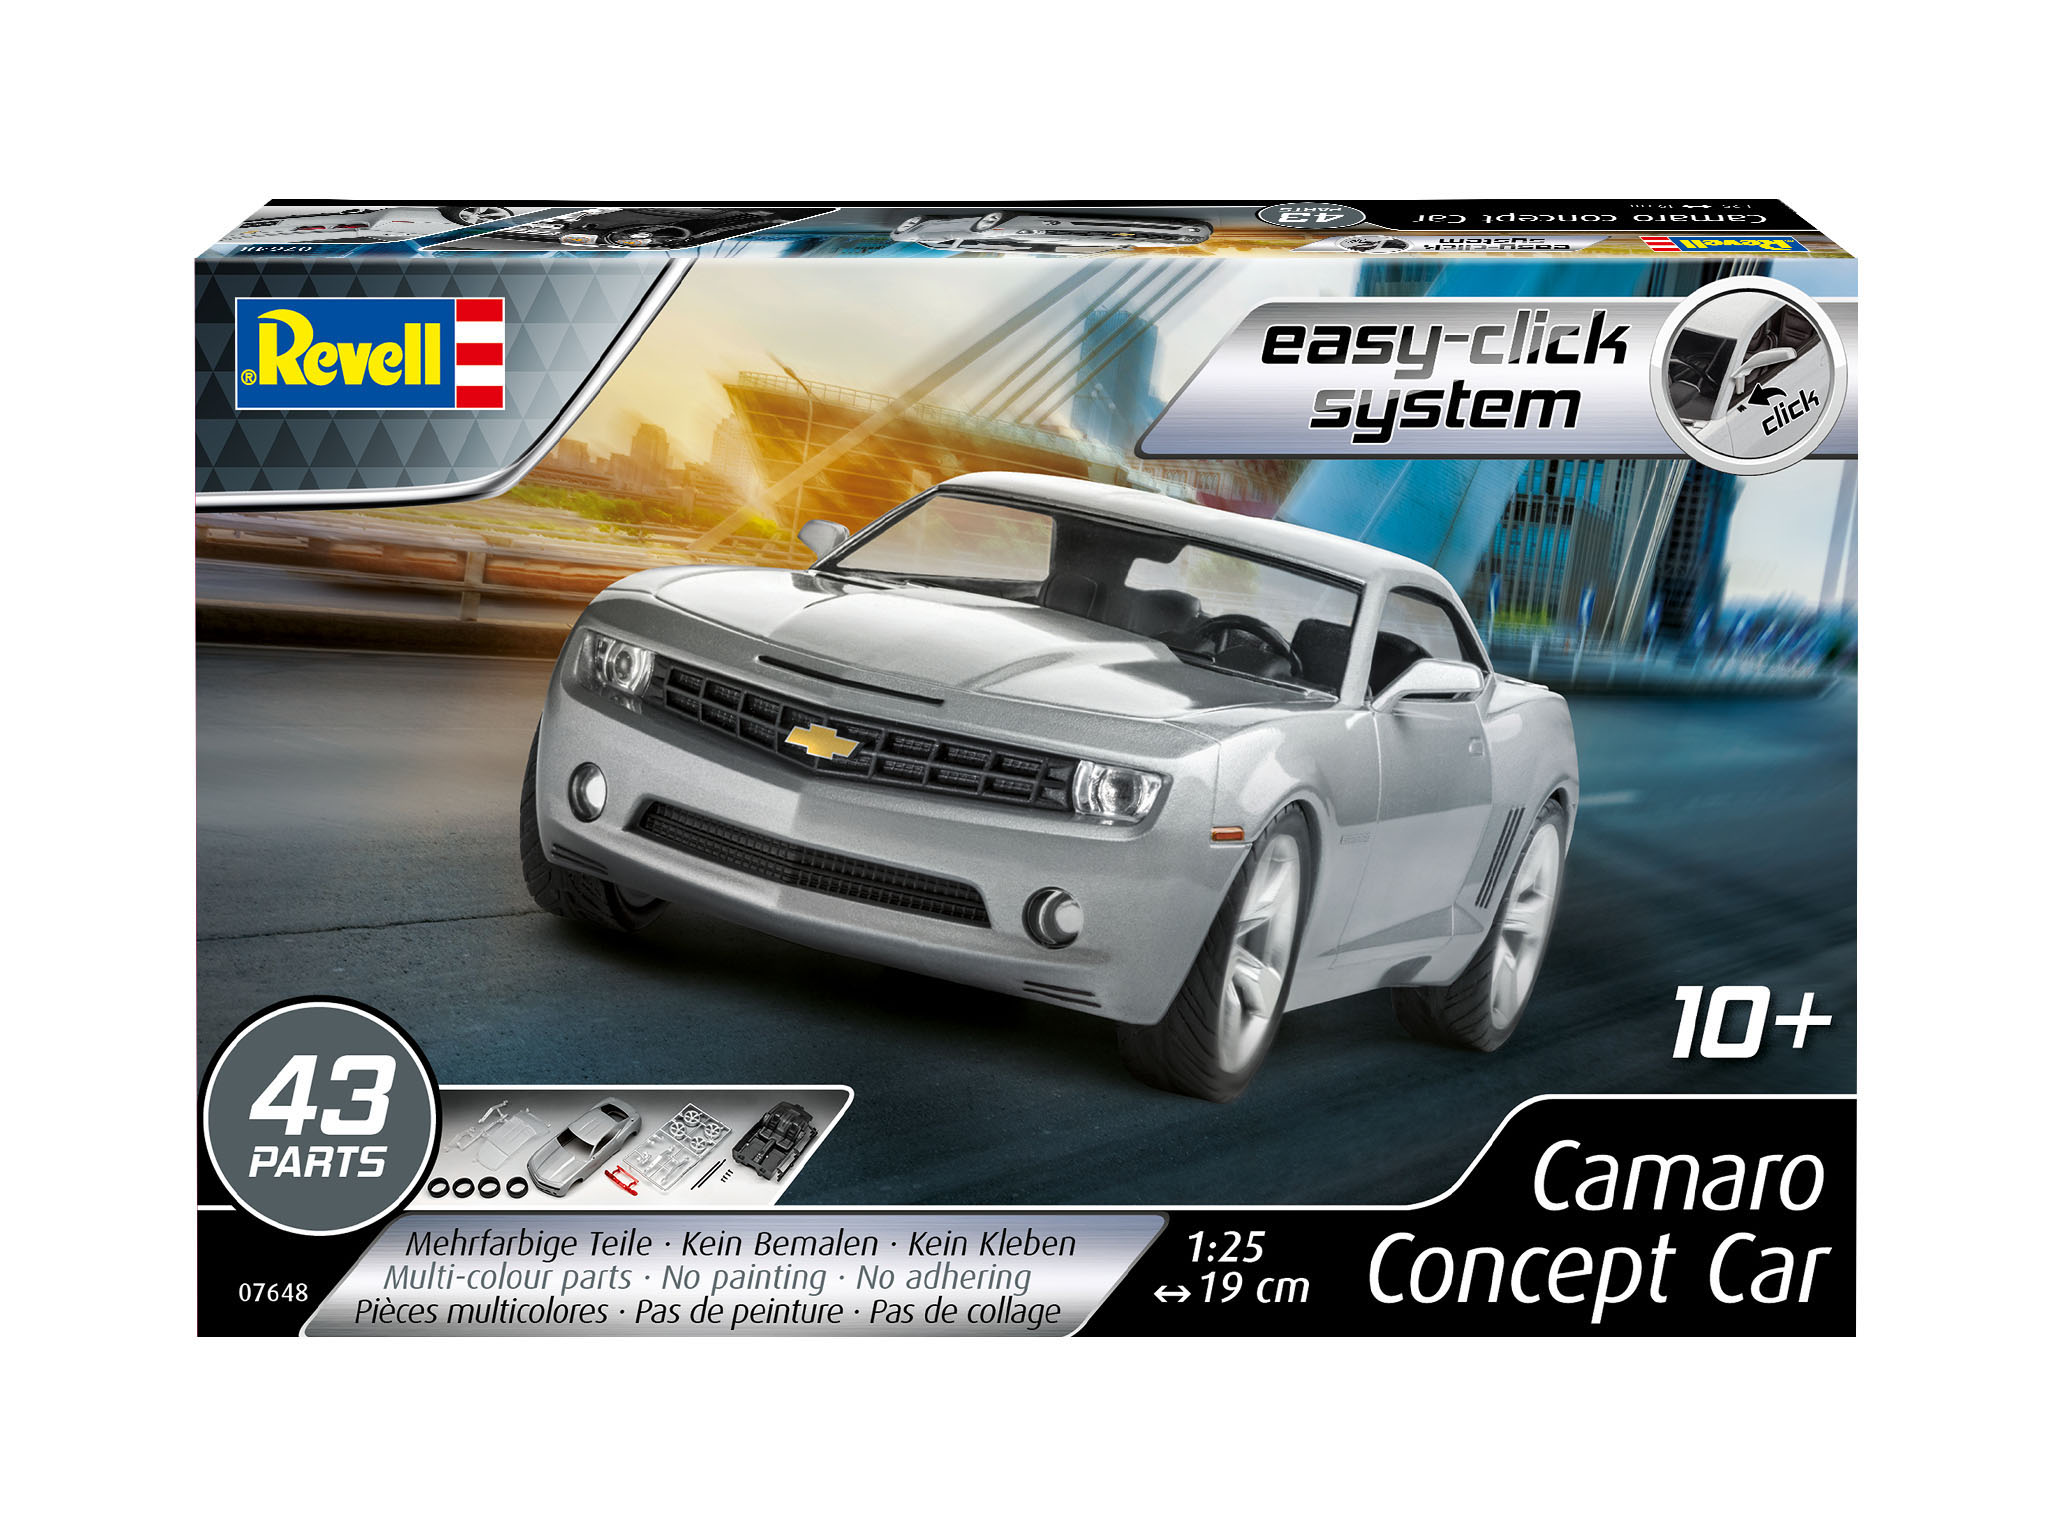 Camaro Concept Car - 07648